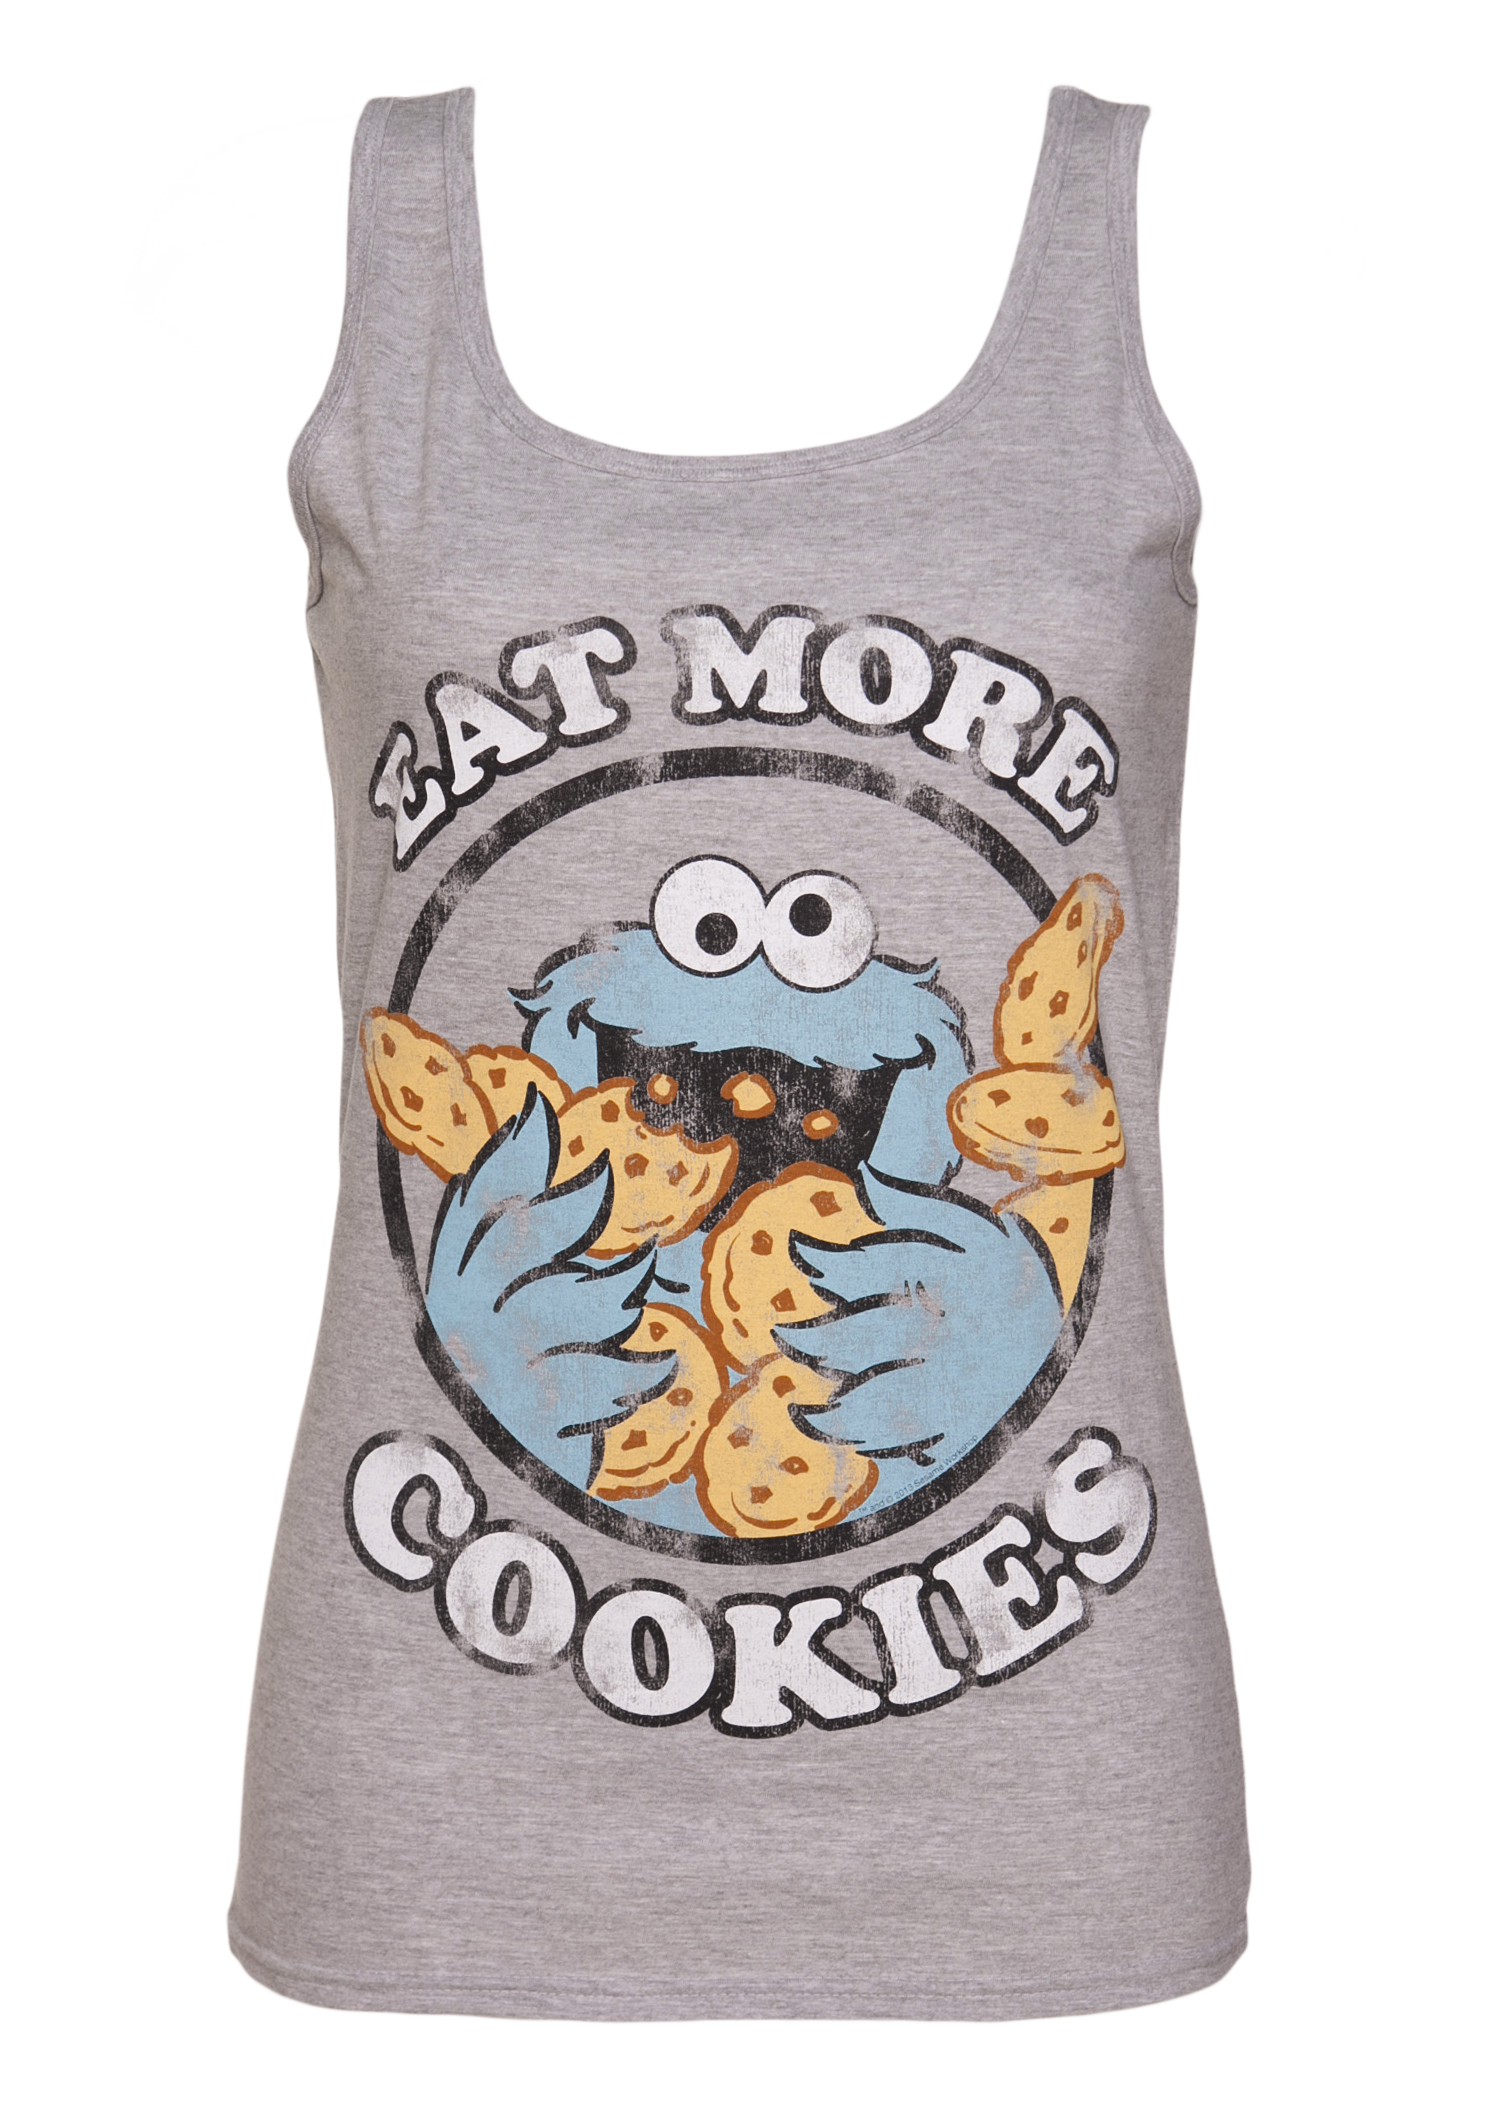 Ladies Cookie Monster Eat More Cookies Vest